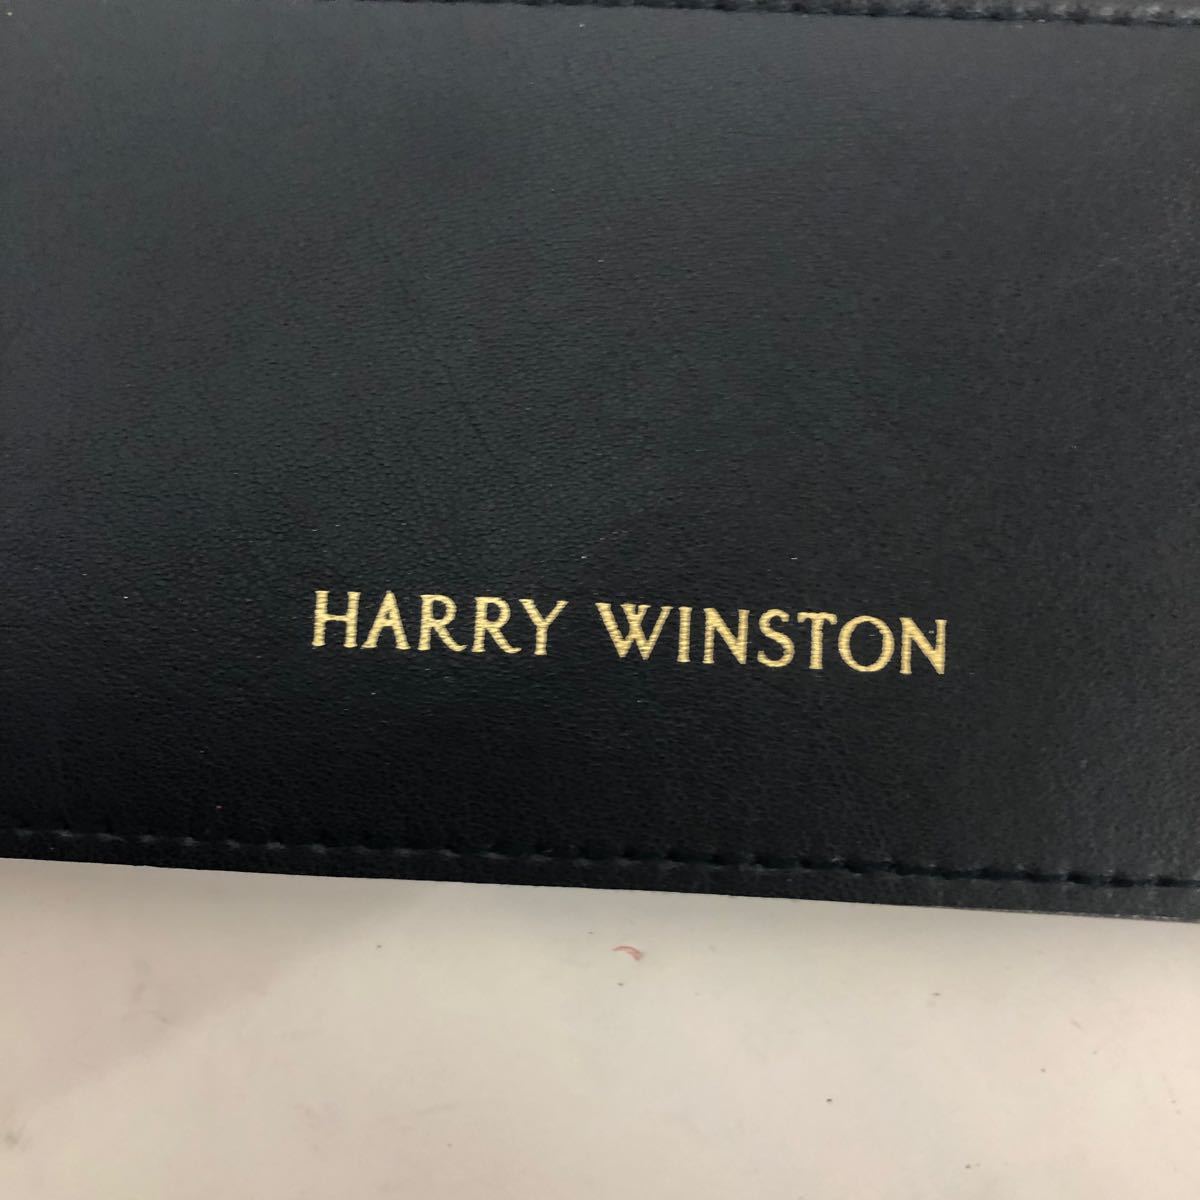  Harry *wi камень Harry Winston аксессуары для мелкие вещи для ювелирные изделия кейс кейс голубой кожа 